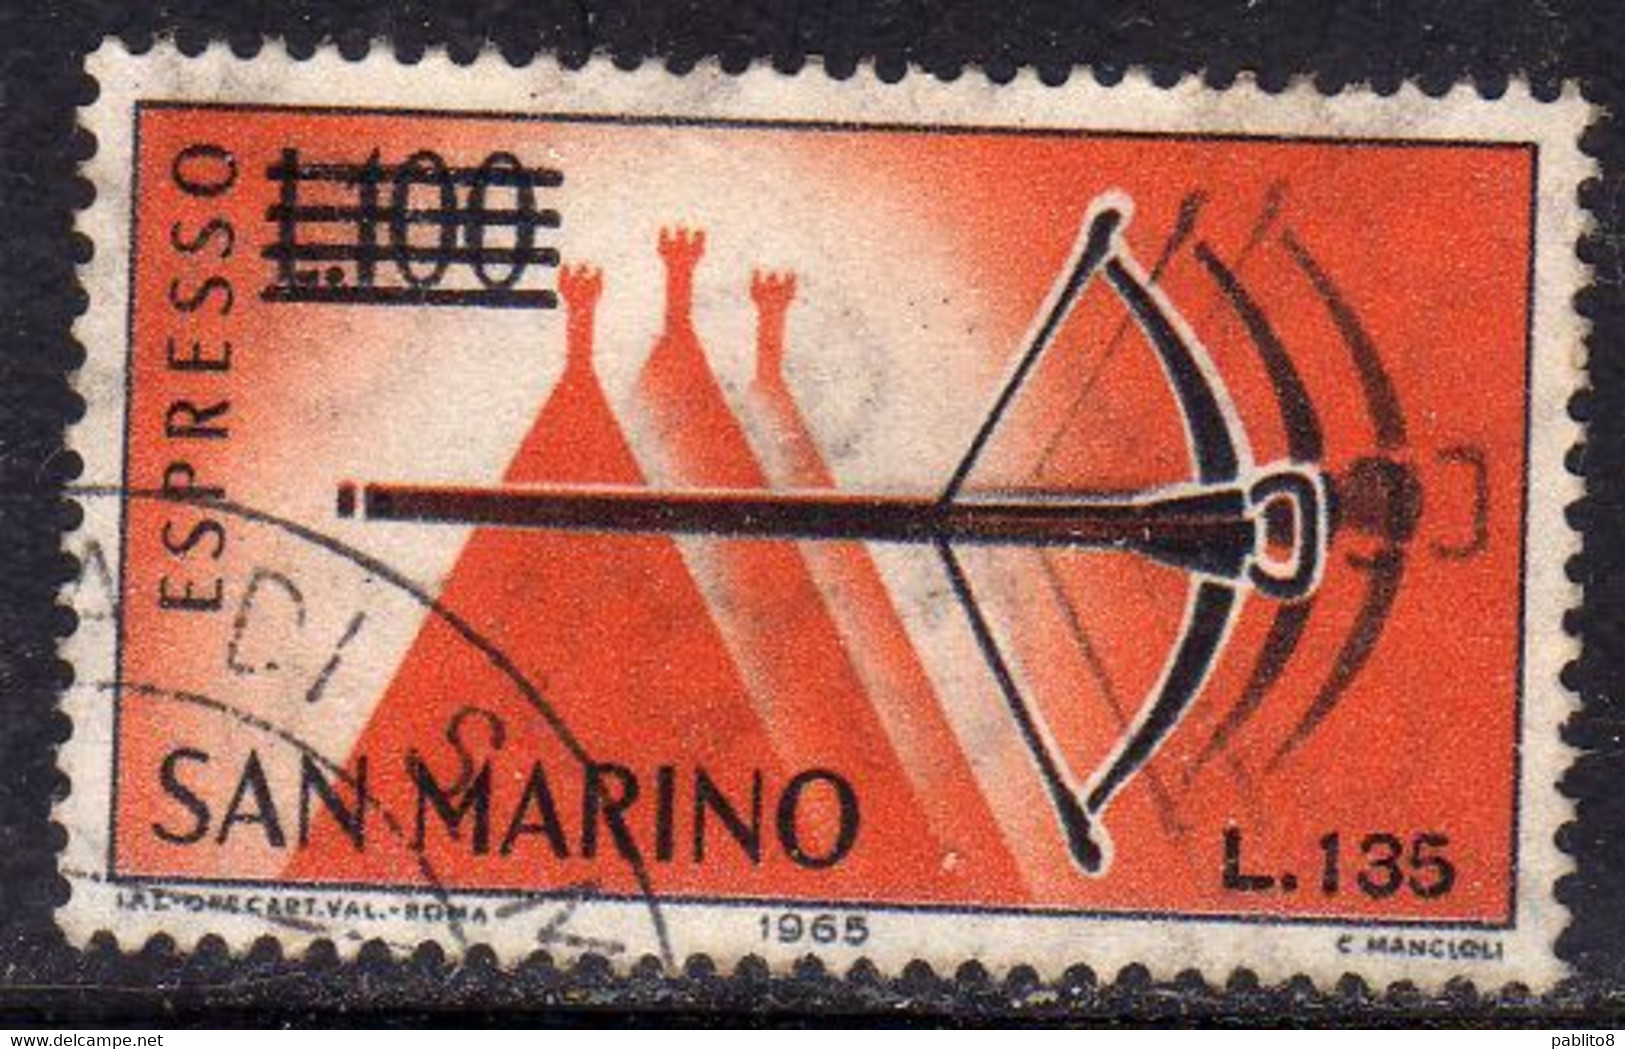 REPUBBLICA DI SAN MARINO 1965 ESPRESSI SPECIAL DELIVERY BALESTRA SOPRASTAMPATO SURCHARGED LIRE 135 SU 100 USATO USED - Exprespost